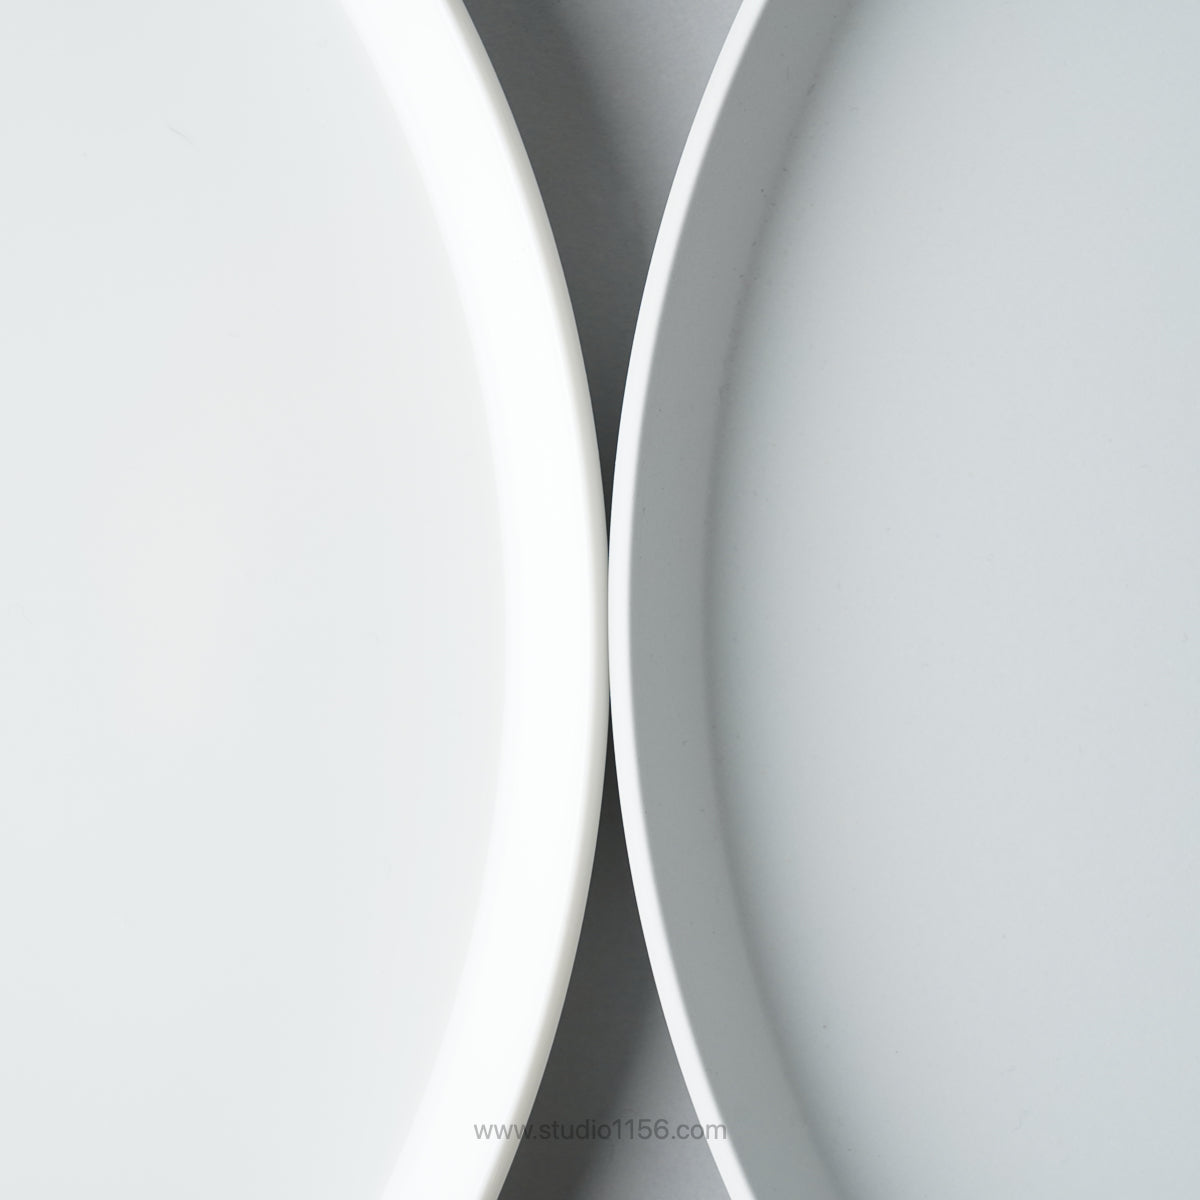 有田焼 ラウンドプレート ホワイト / TY Round Plate Plain White 1616 / Arita Japan Studio1156